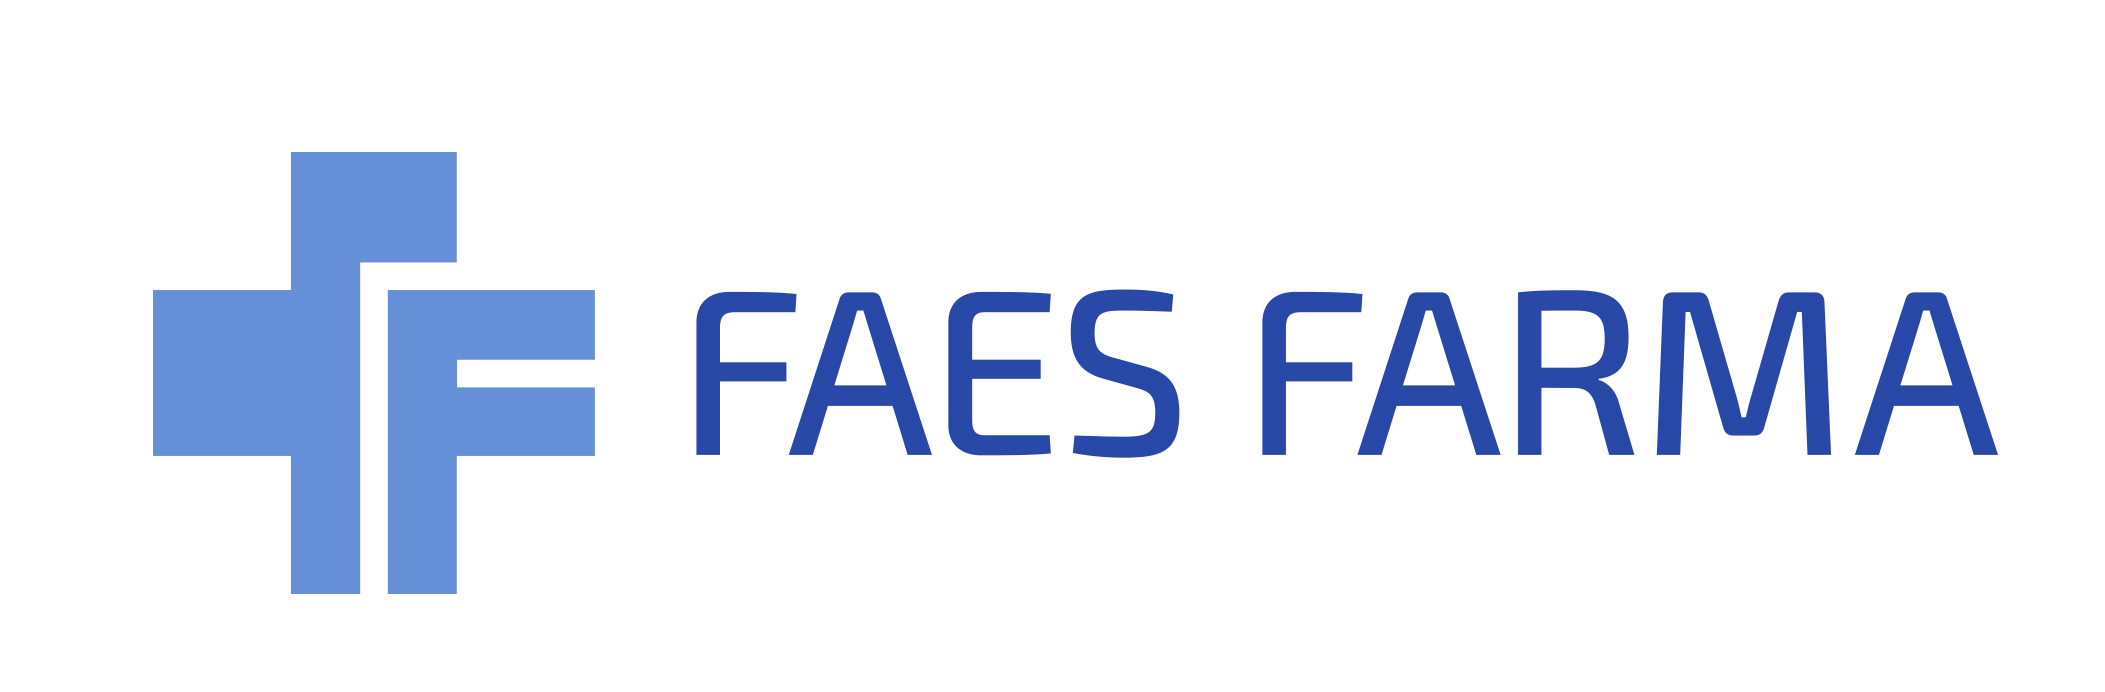 FAES FARMA, S.A. - banner